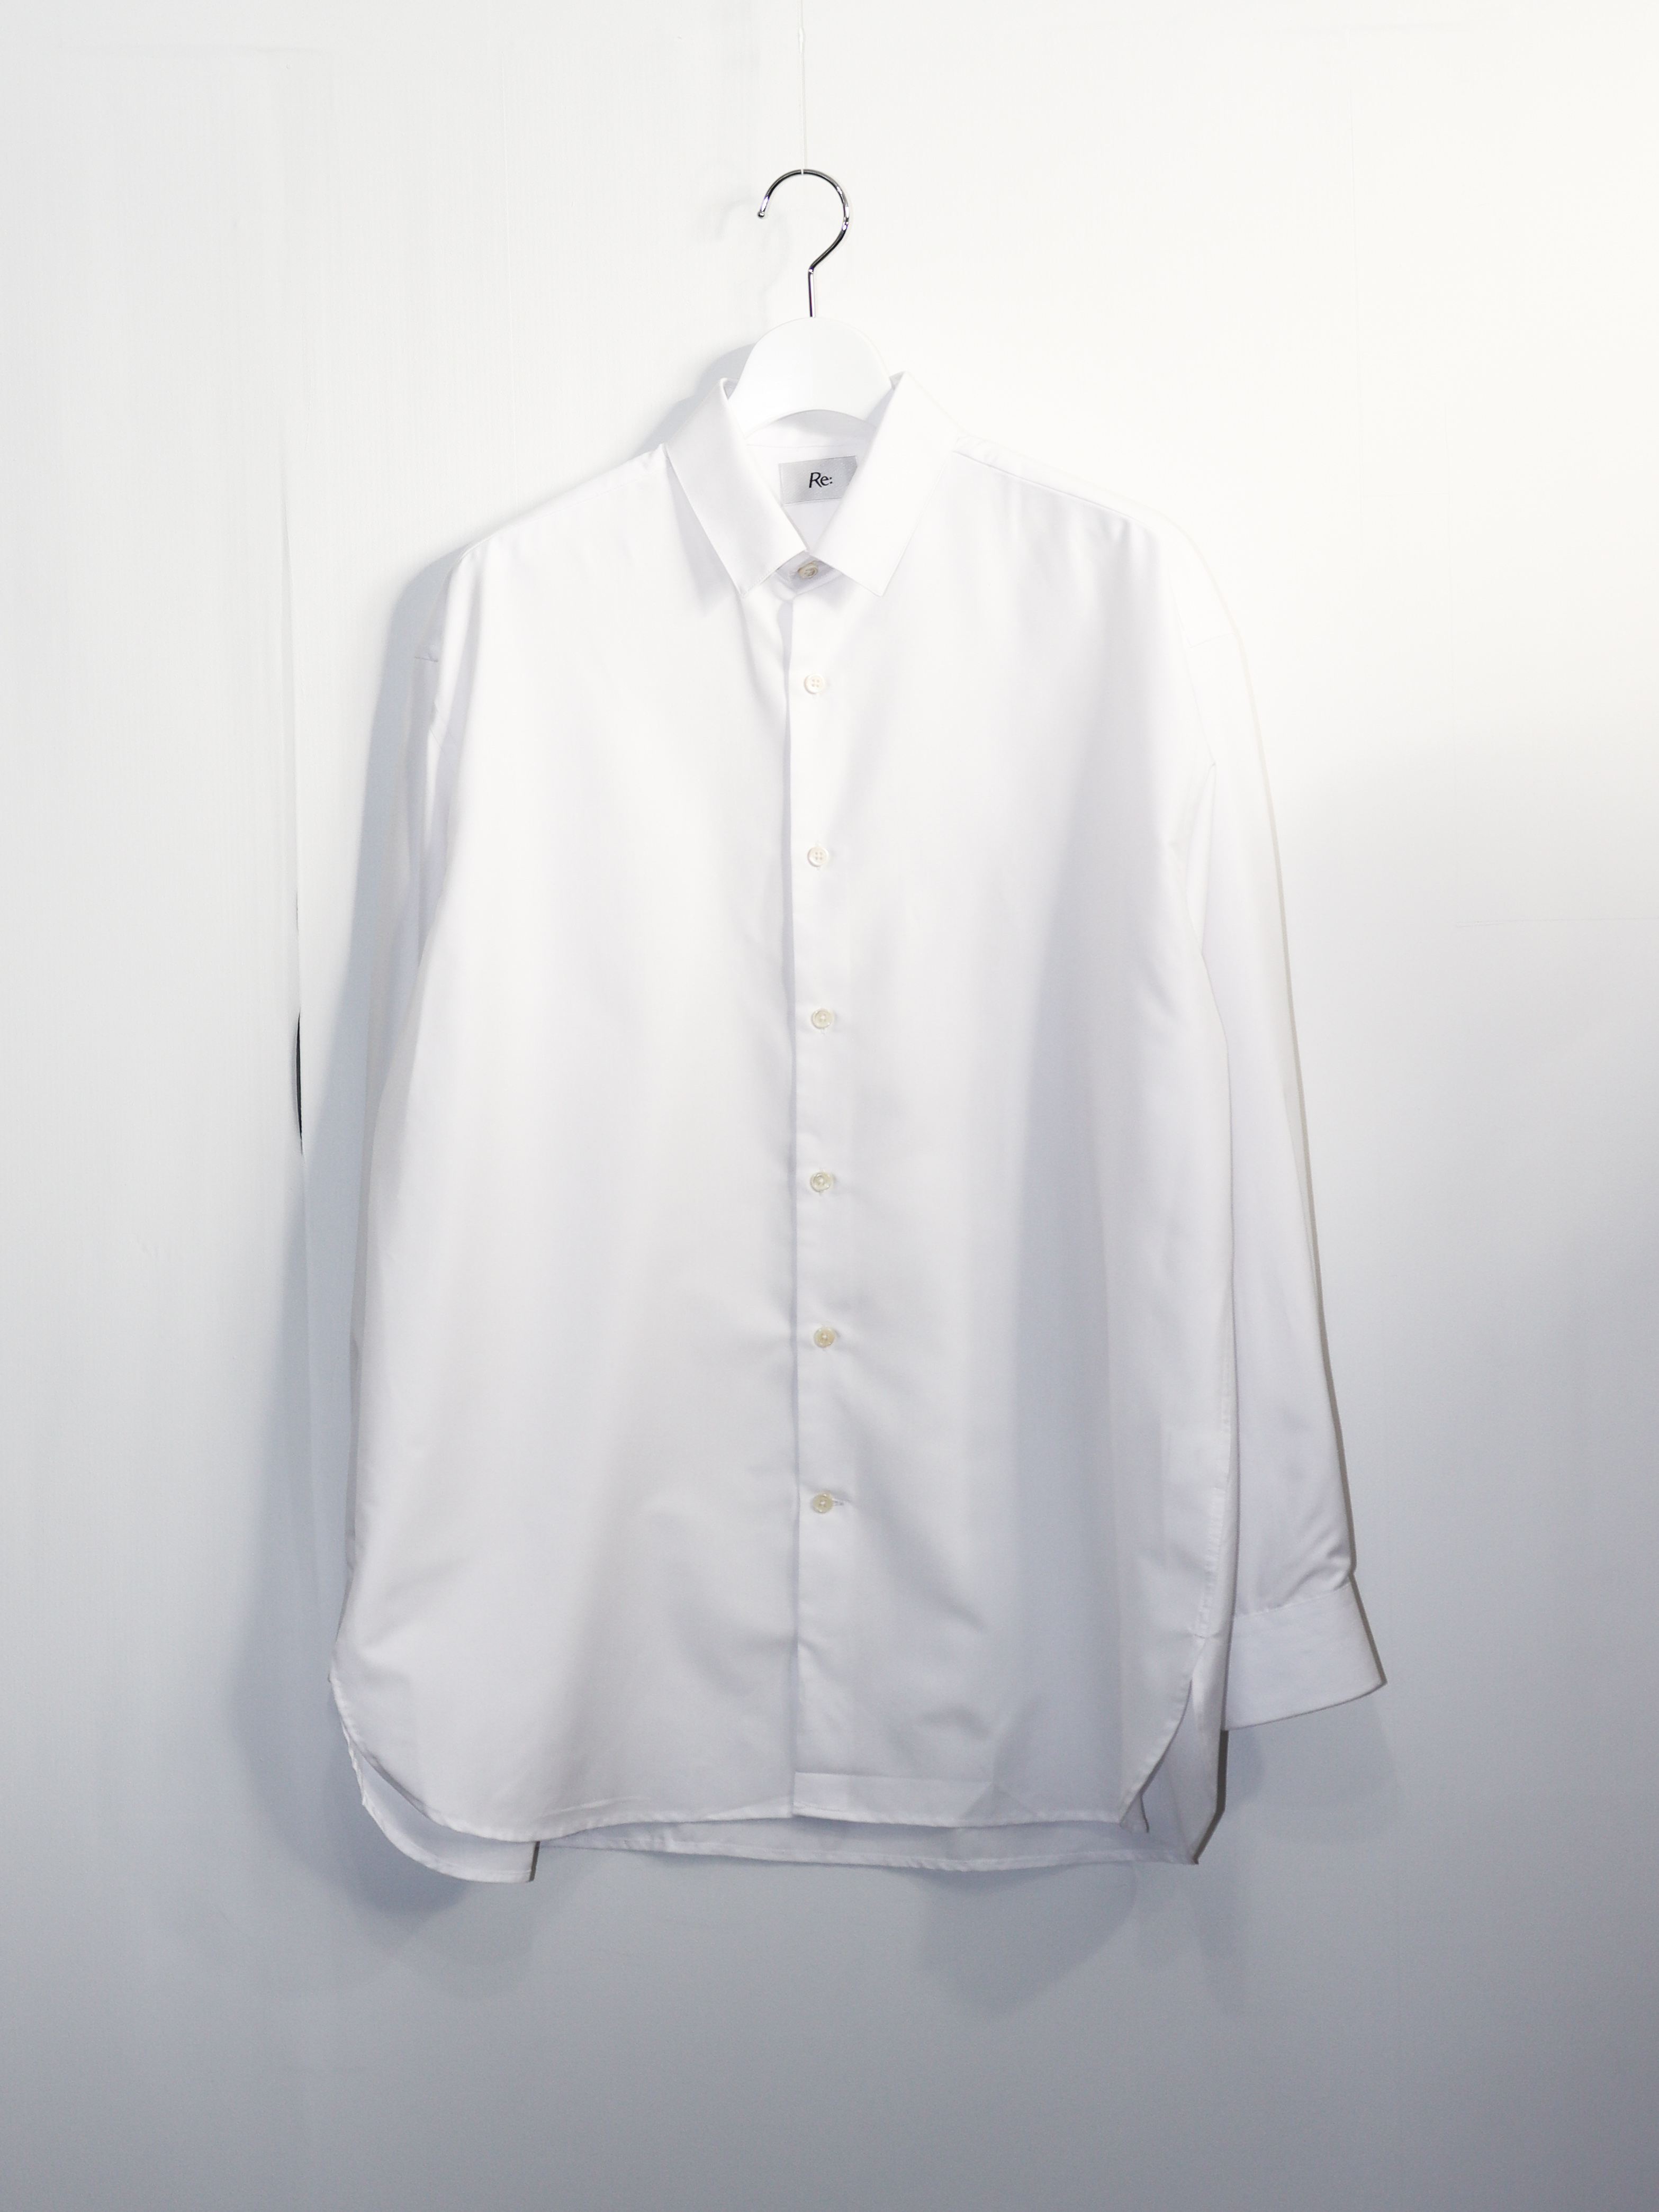 服ログ2020年春夏「KEI×MB×Re:」究極の白シャツをアップデートして発売 